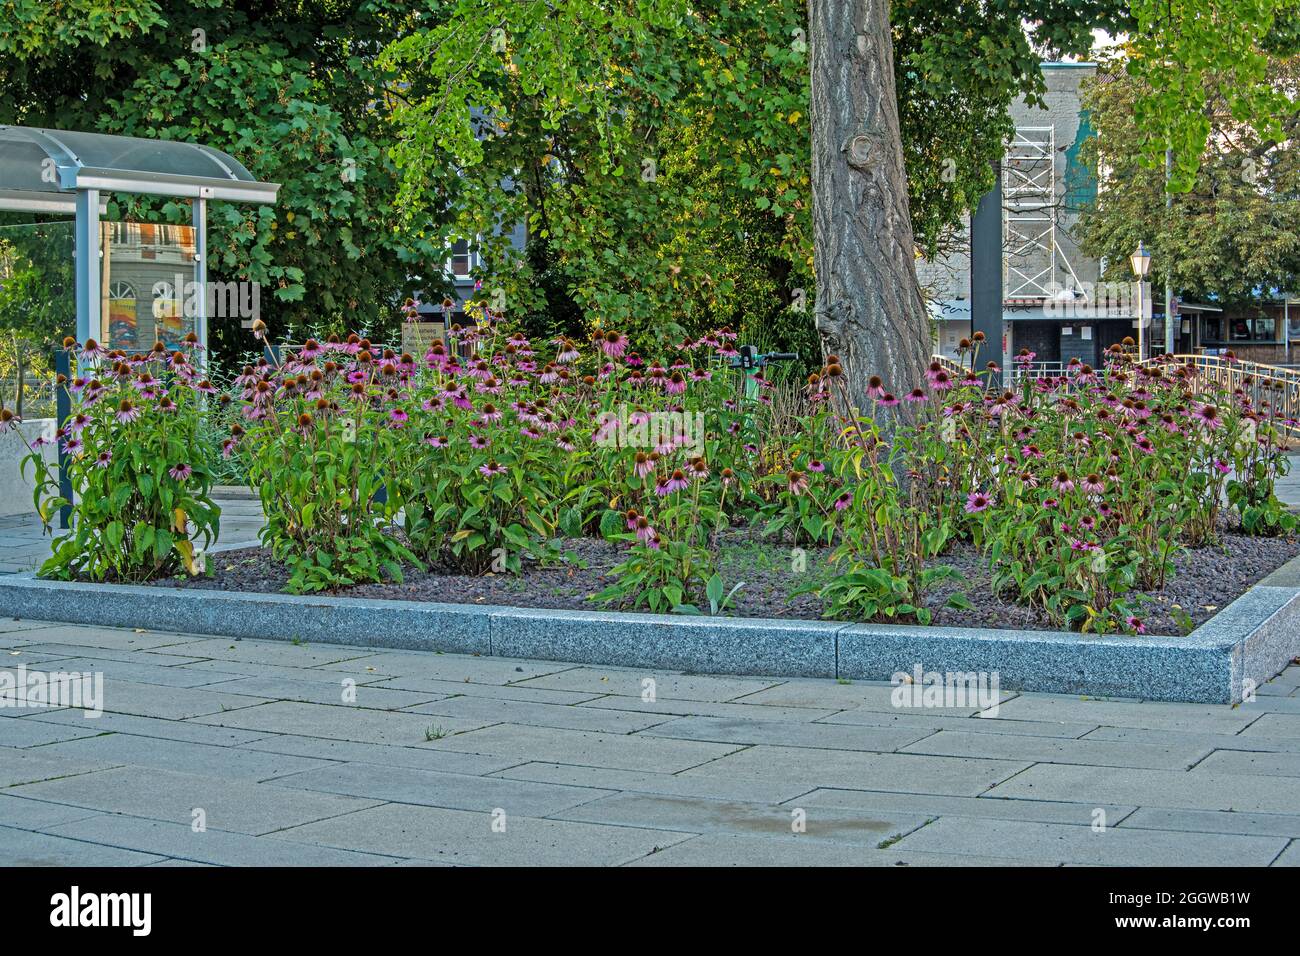 Braunschweig, Stadtlandschaft Häuser und Straßenverkehr im Hintergrund, Vordergrund blühende Blumen ein kleines Stück Natur in kleinen Beeten Foto Stock